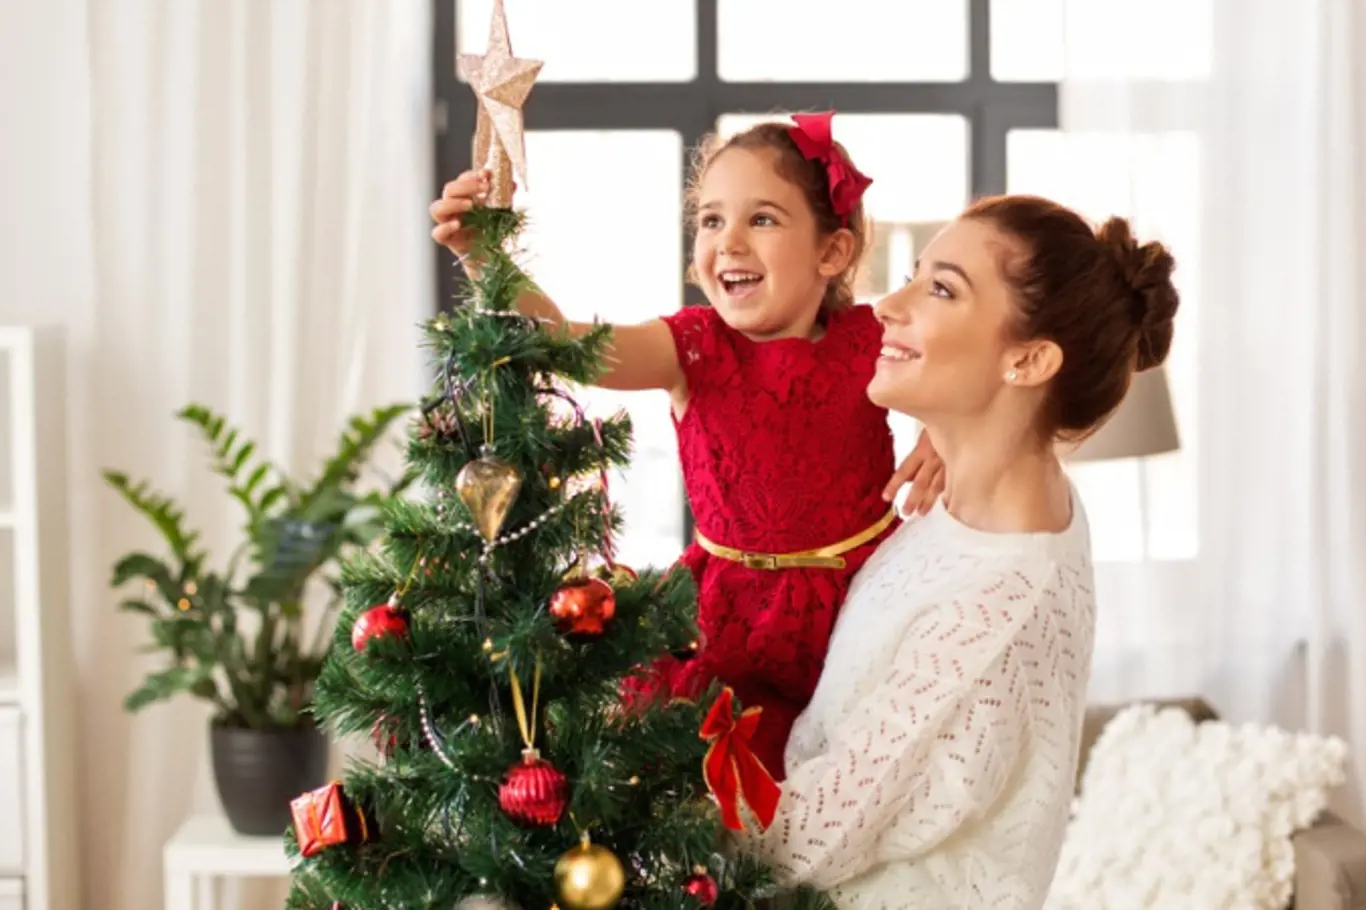 Špička vánočního stromečku se tradičně zdobí hvězdou.